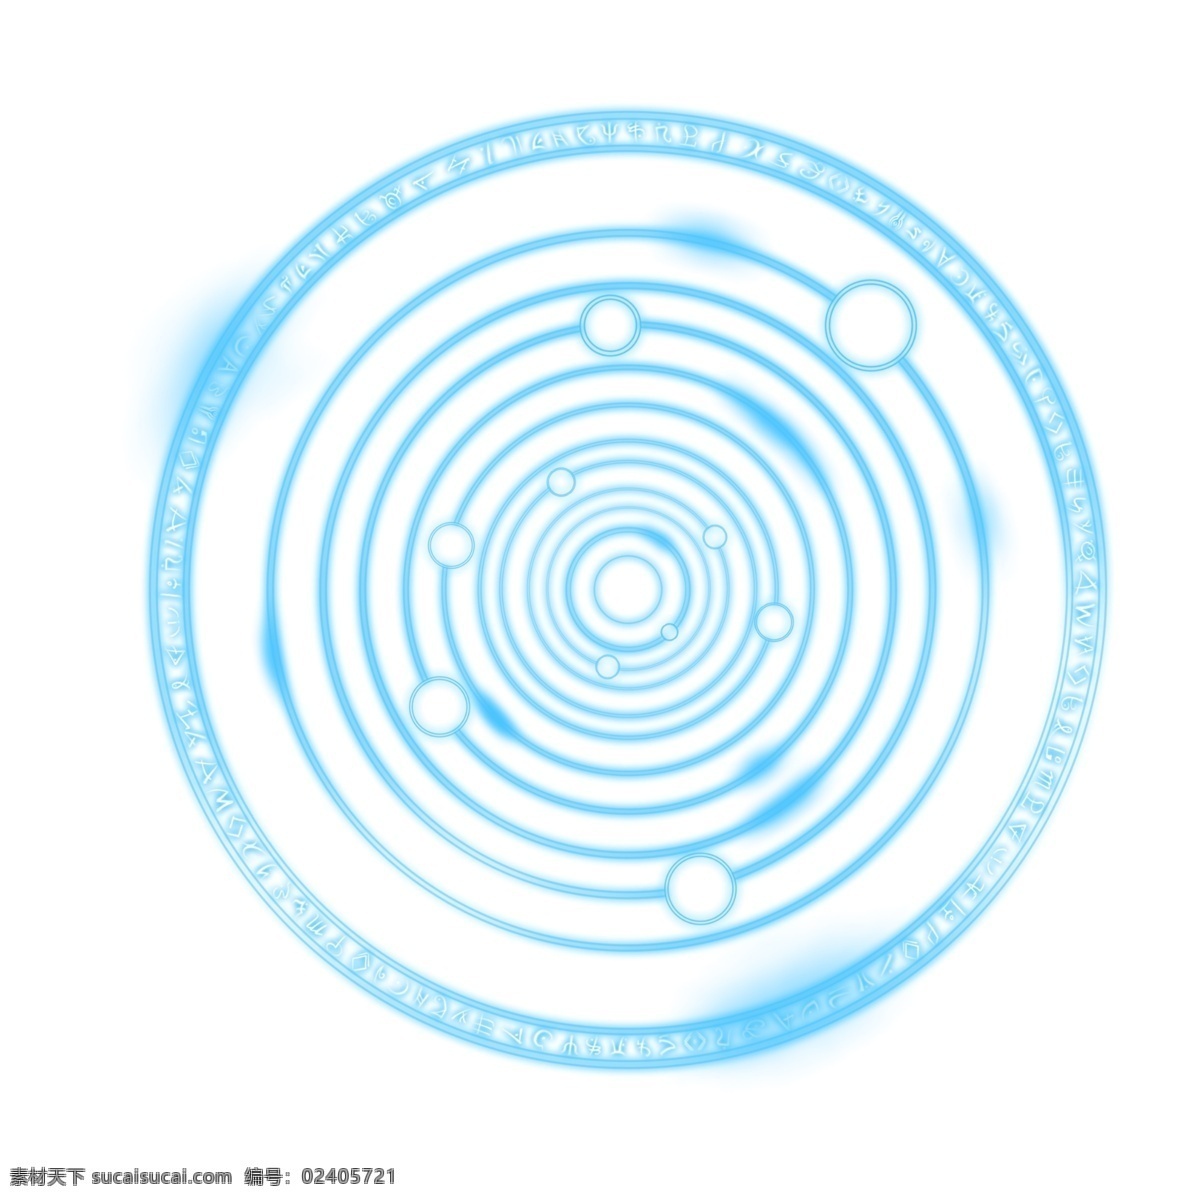 圆形 魔法 光环 图案 透明 底 光效 蓝色 光圈 免抠图 装饰图 光束 光点 插画 青色 魔法阵 圆环发光 蓝色发光体